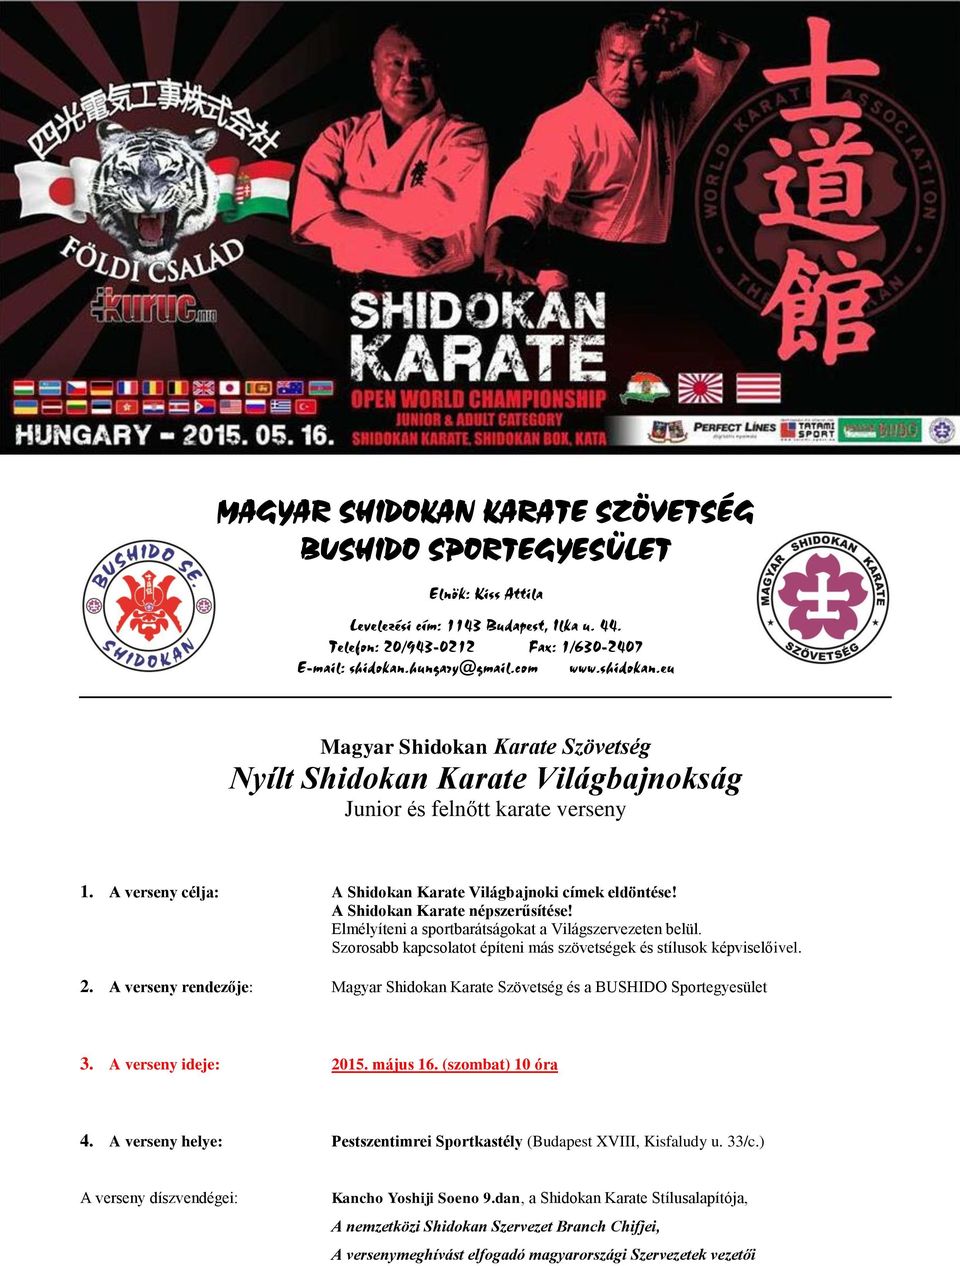 A Shidokan Karate népszerűsítése! Elmélyíteni a sportbarátságokat a Világszervezeten belül. Szorosabb kapcsolatot építeni más szövetségek és stílusok képviselőivel. 2.